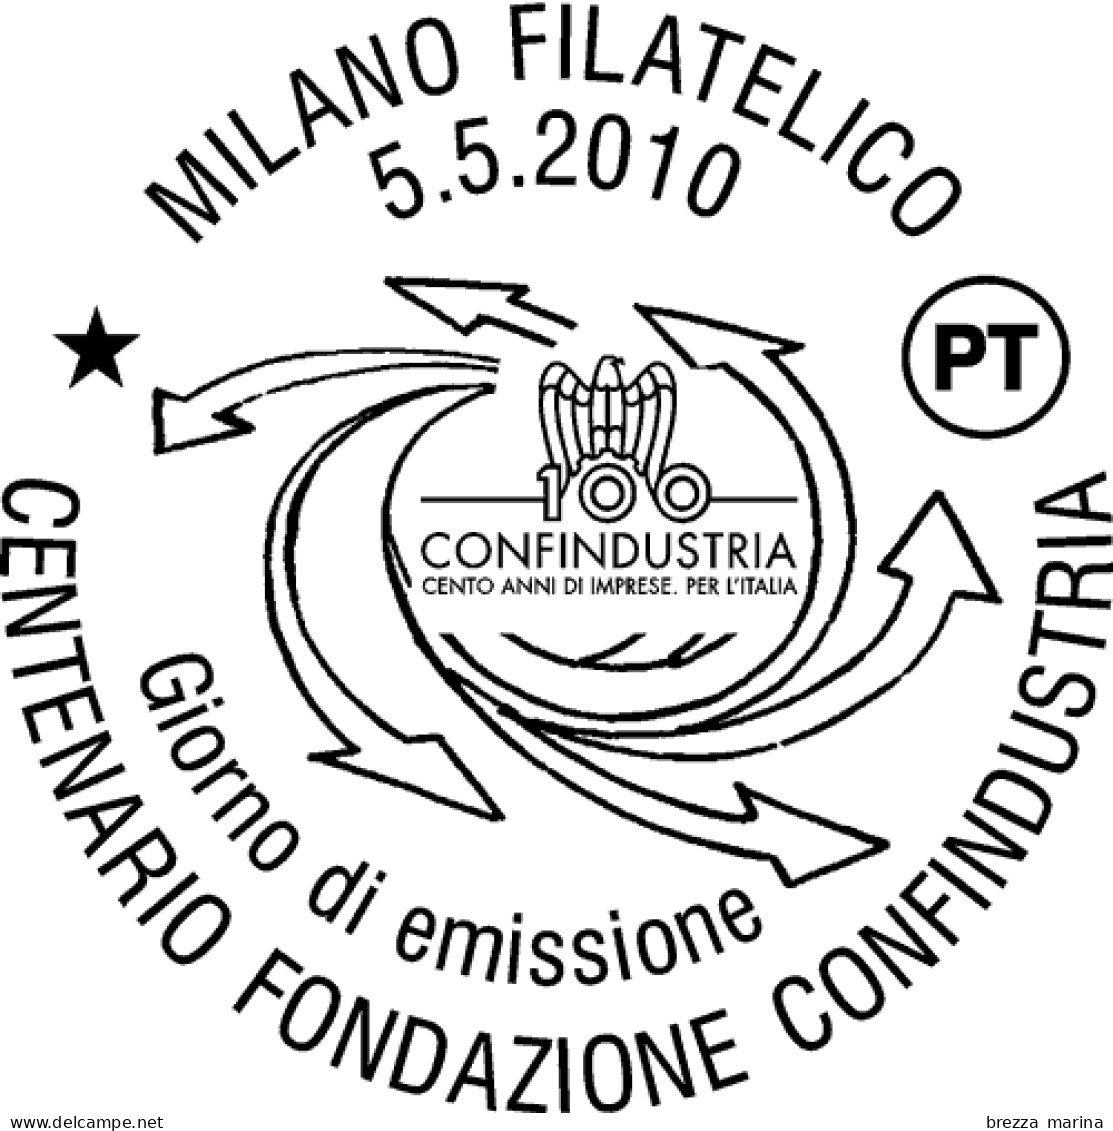 ITALIA - Usato - 2010 - 100º Anniversario Della Fondazione Di Confindustria - 1.40 - 2001-10: Oblitérés